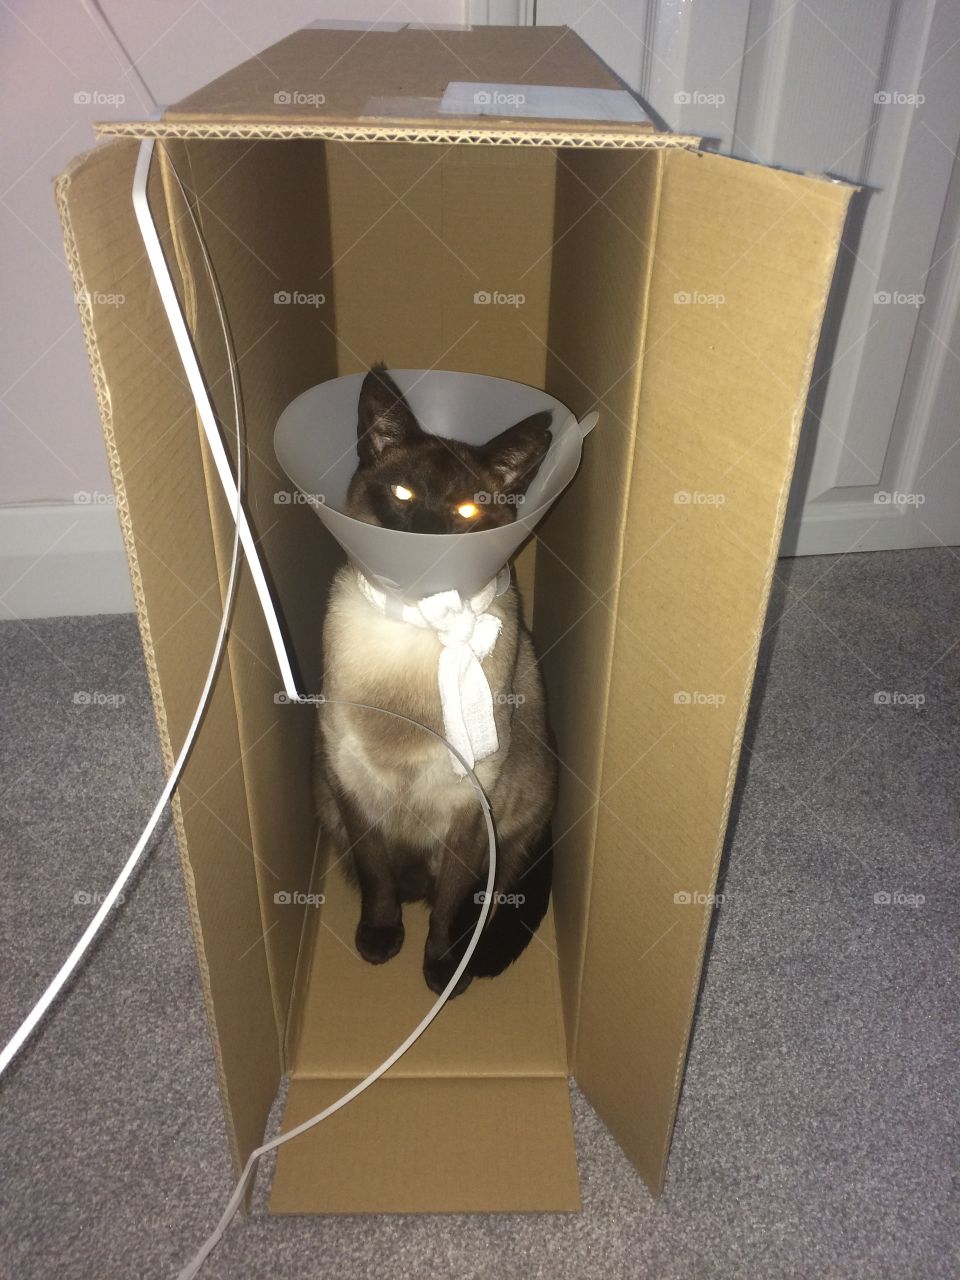 Funny siamese cat with cone in box